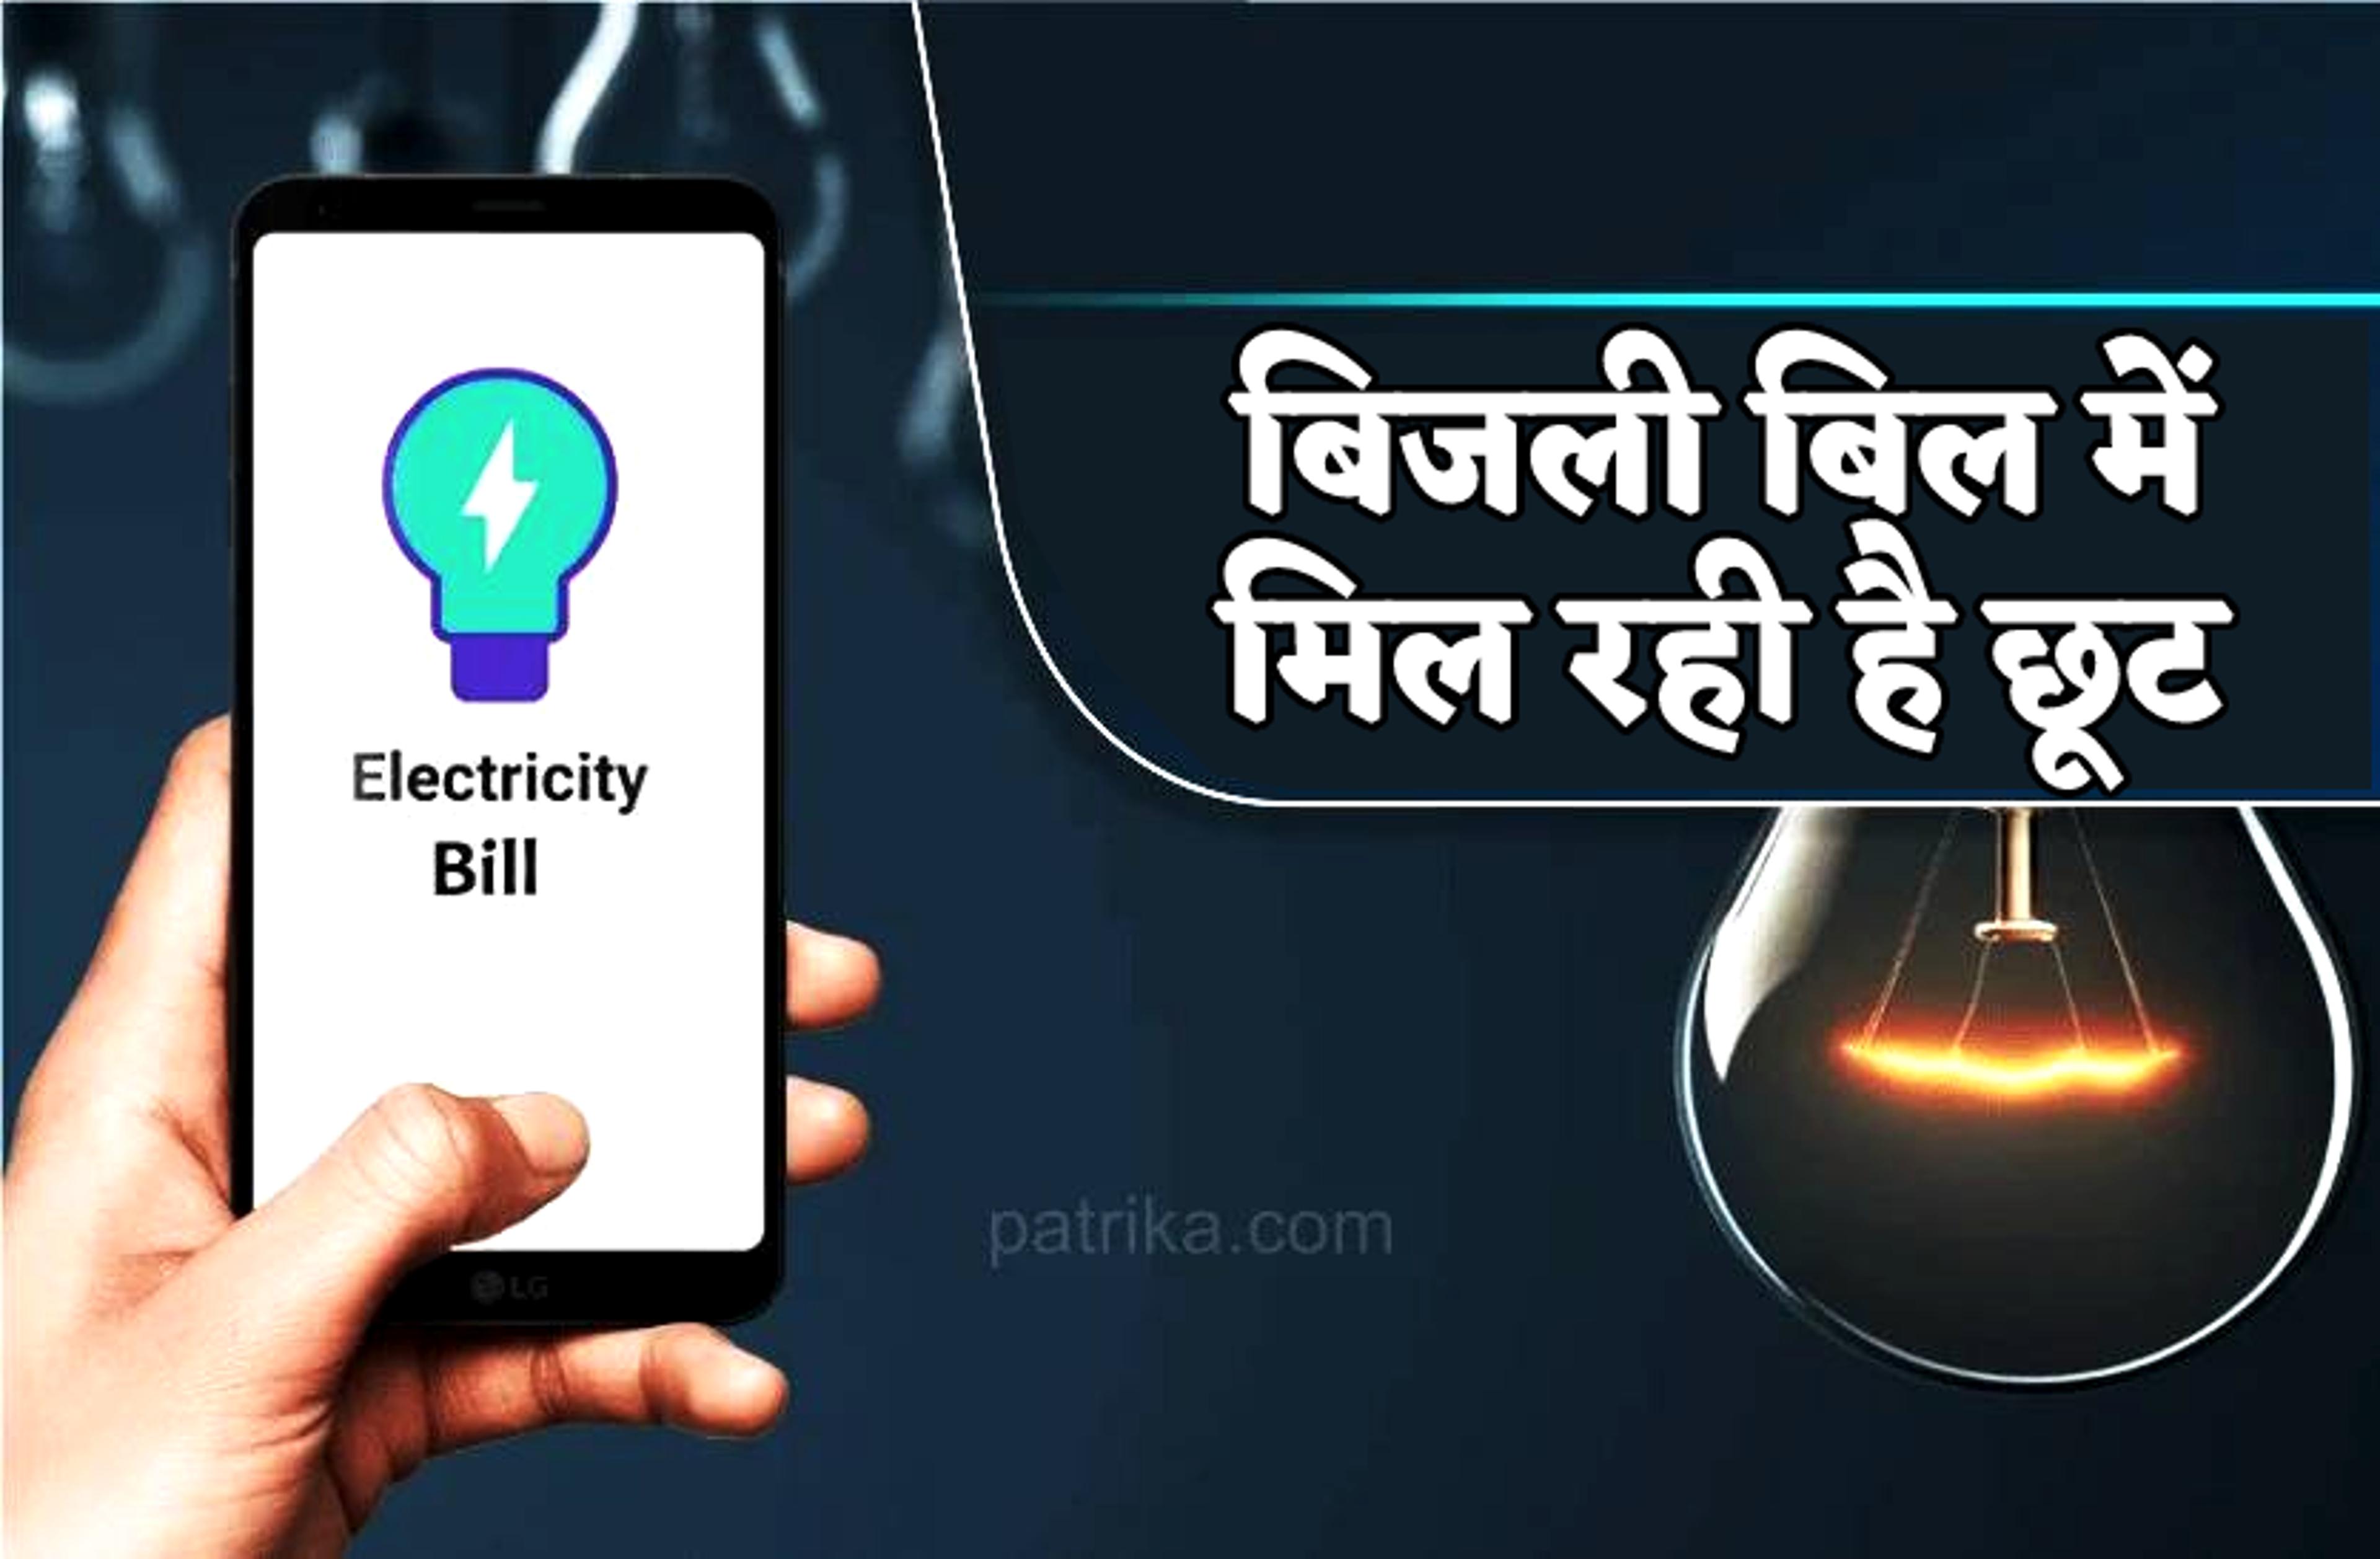 मप्र : अब कम आया बिजली बिल तो उपभोक्ता के साथ नपेंगे इंजीनियर